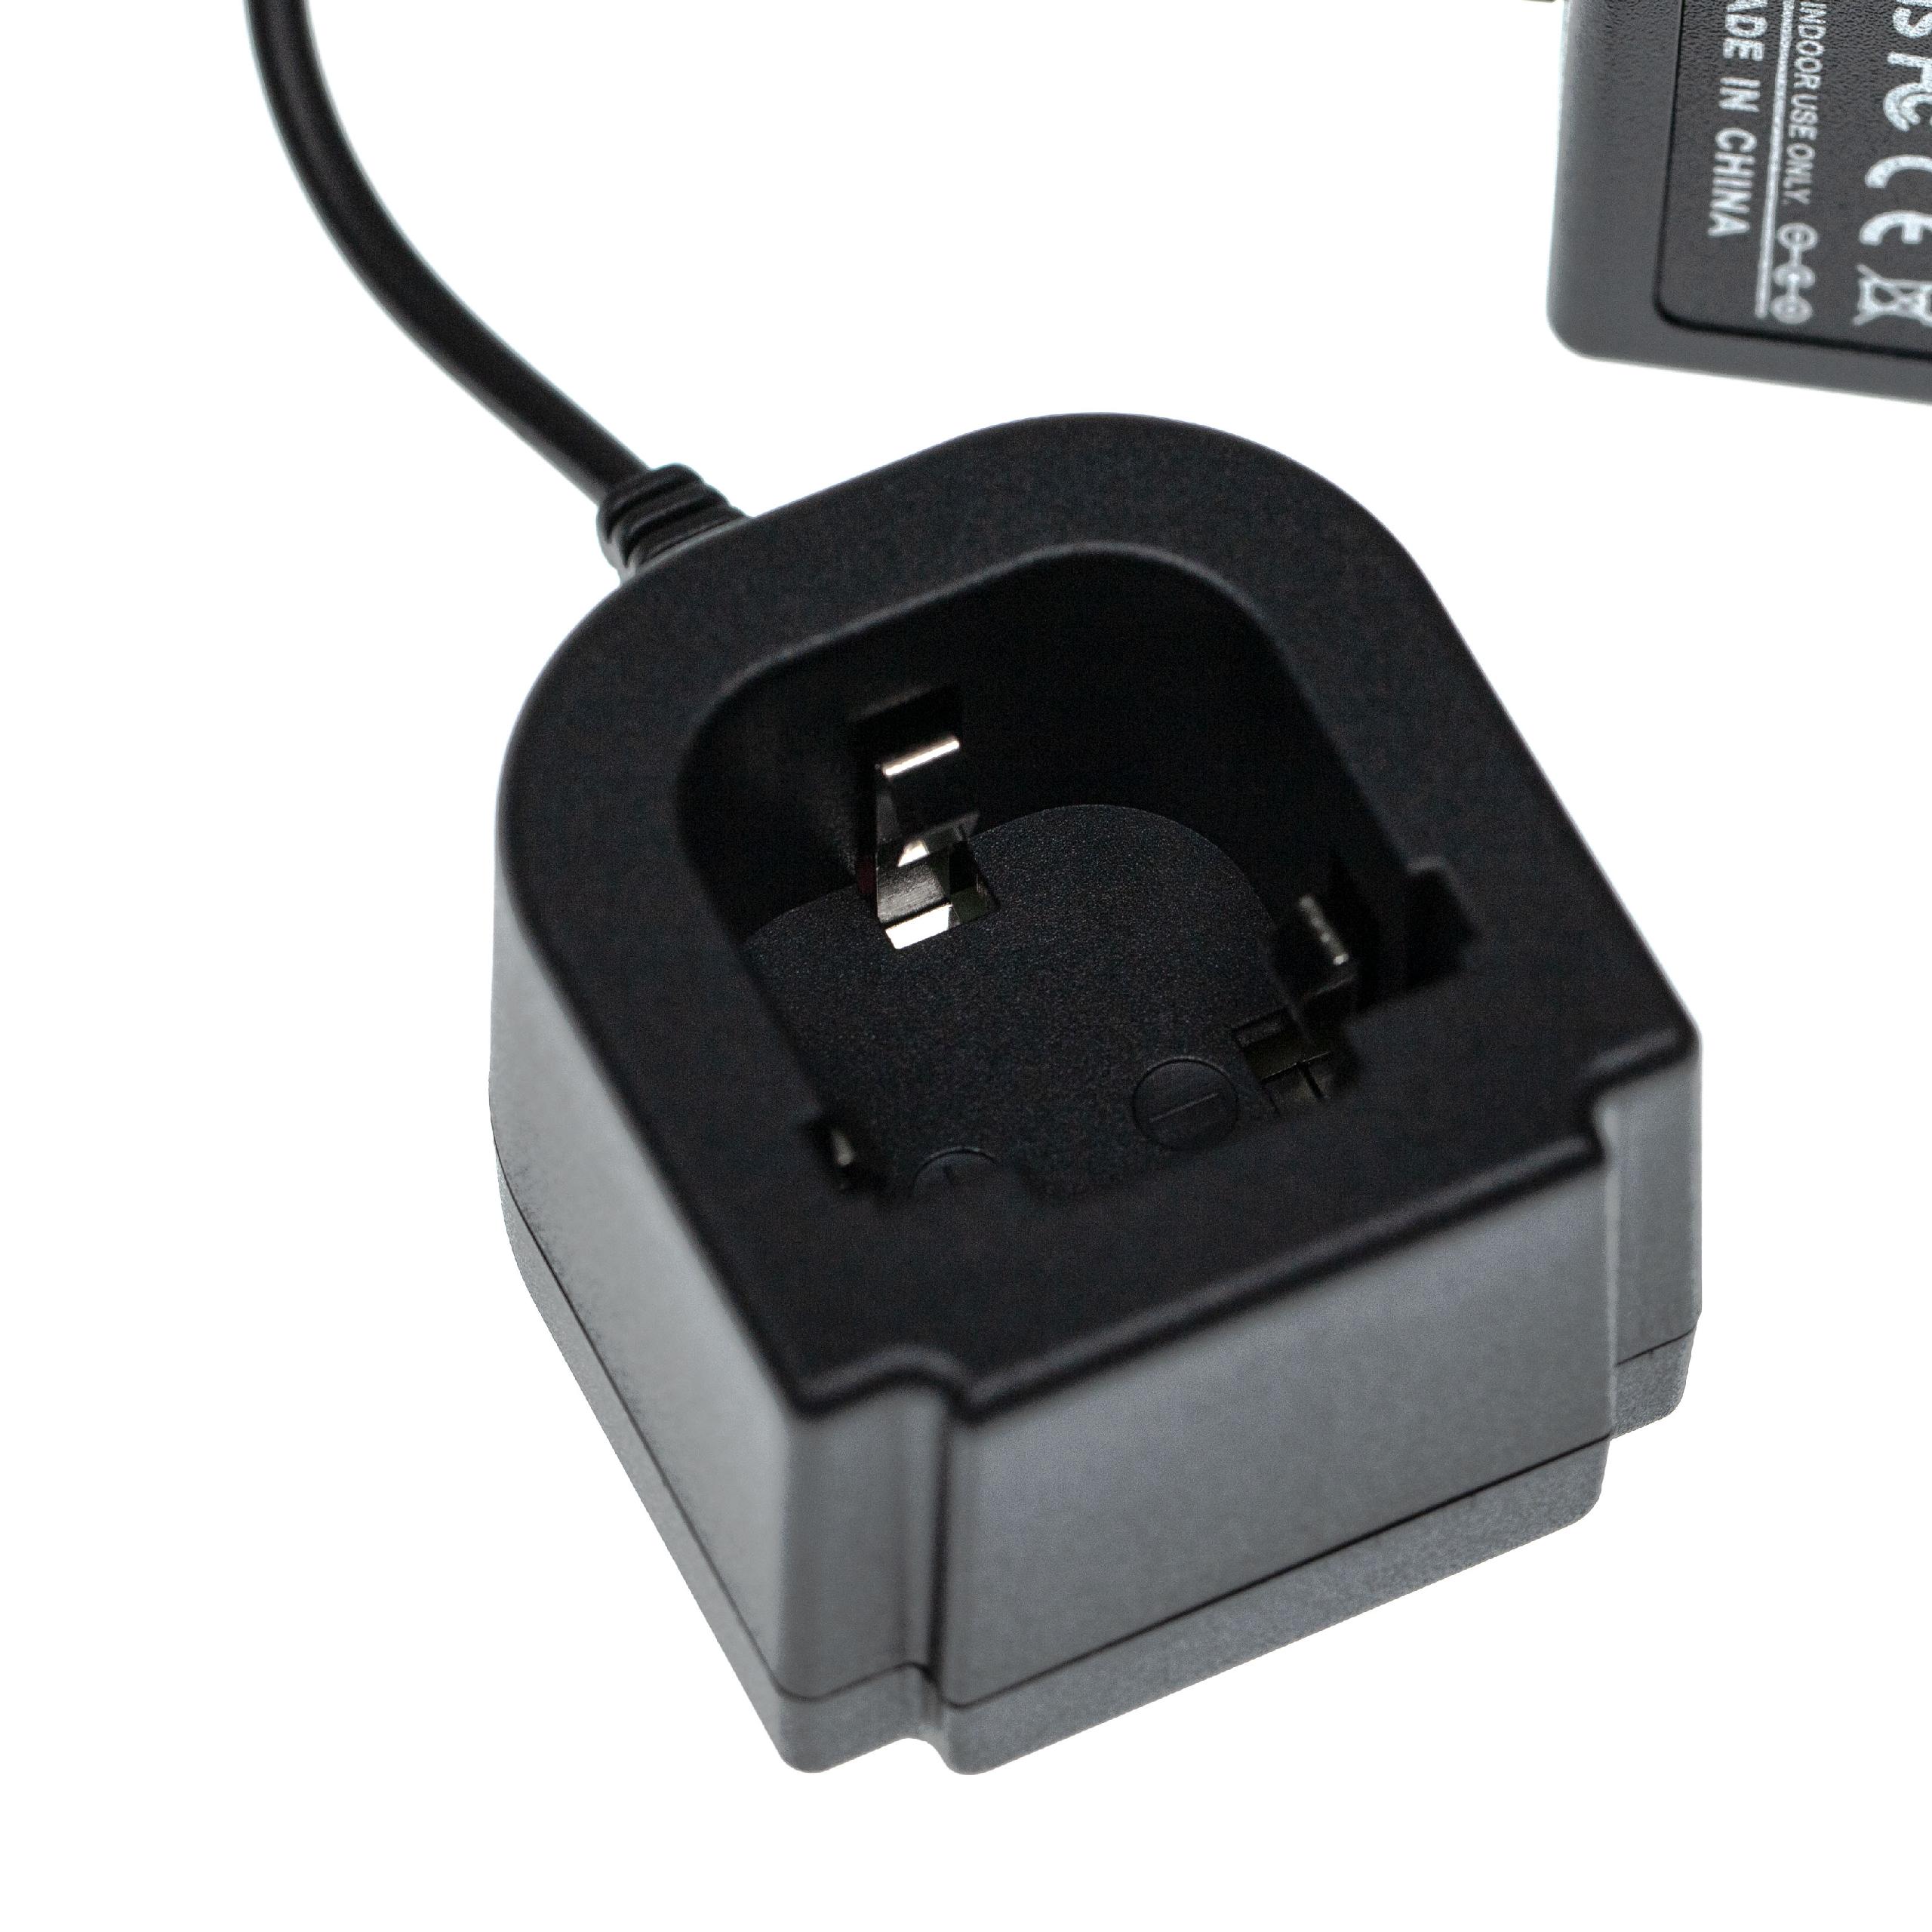 Chargeur pour batterie d'outil électrique , Hilti 265605